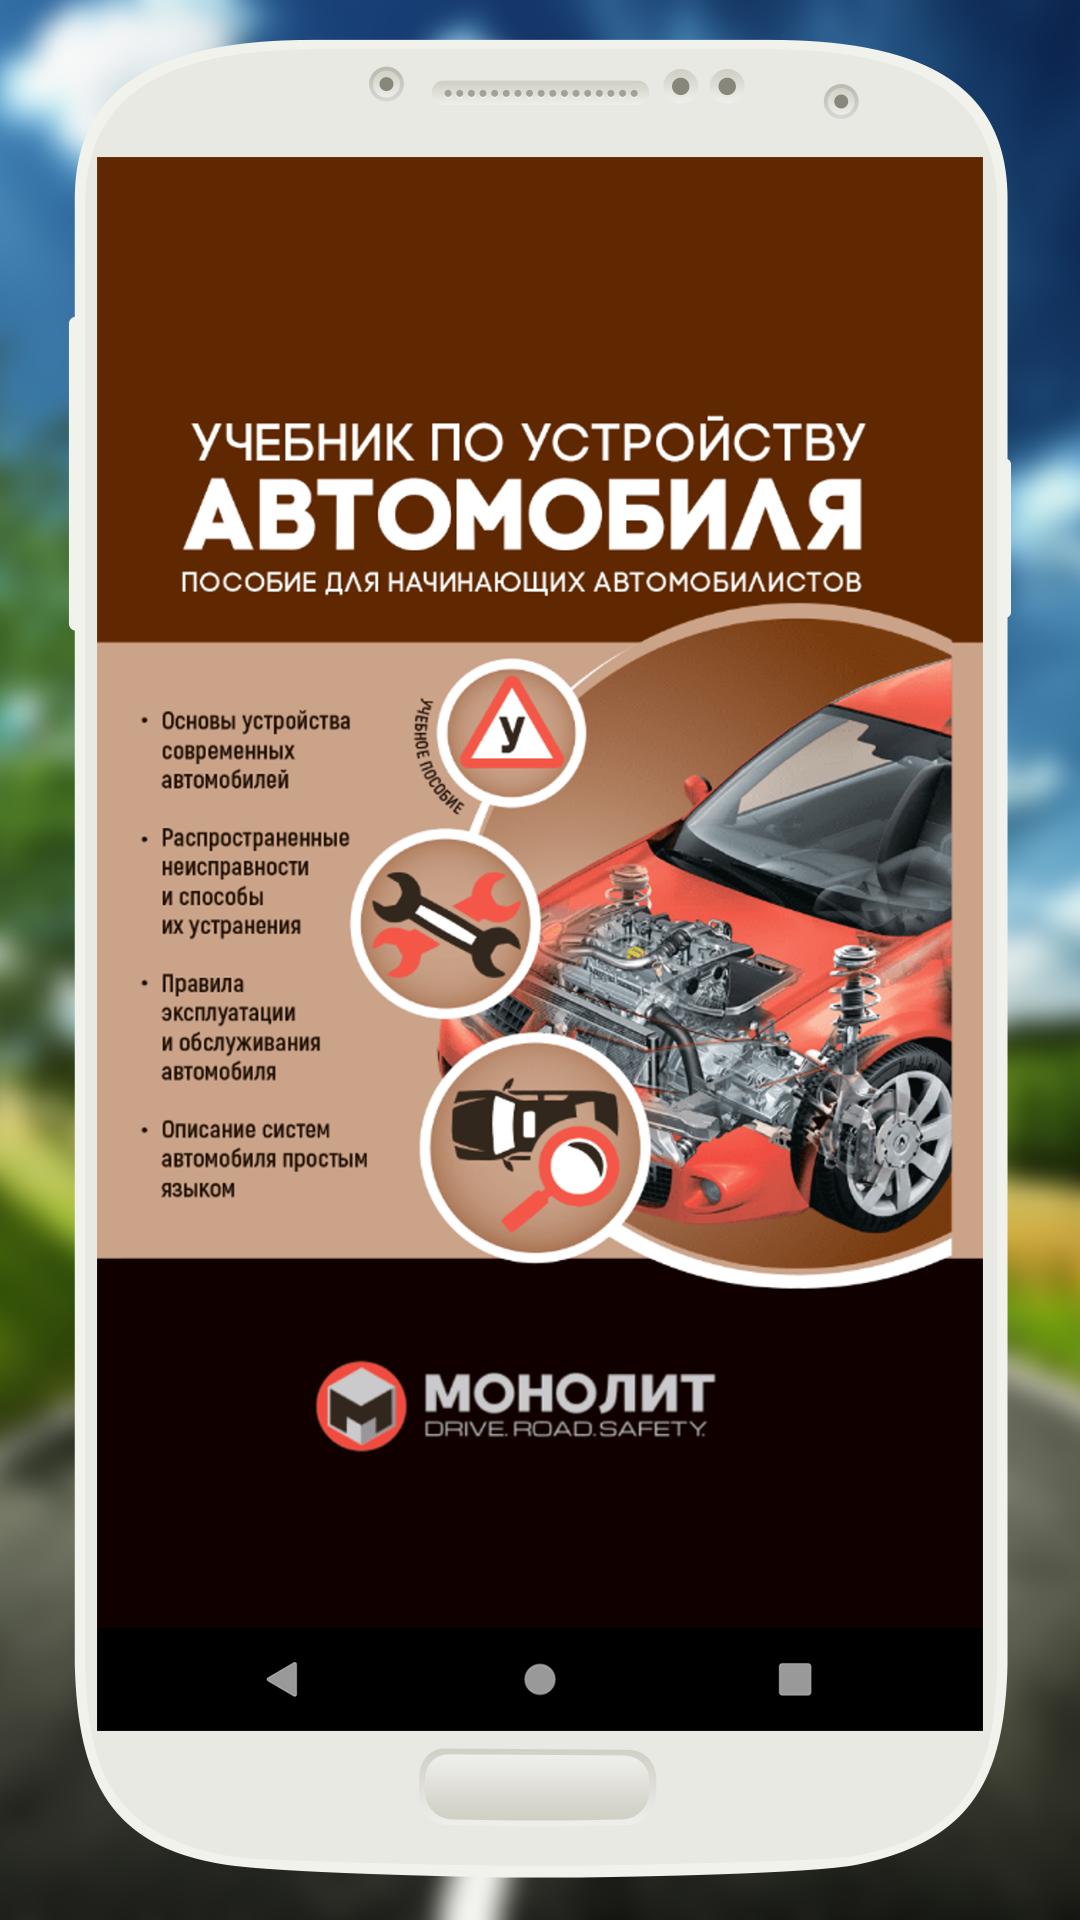 Инженер книга 8. Automobile Engineer - журнал. Безопасность Android книжка. Как поставить учебник на машине.